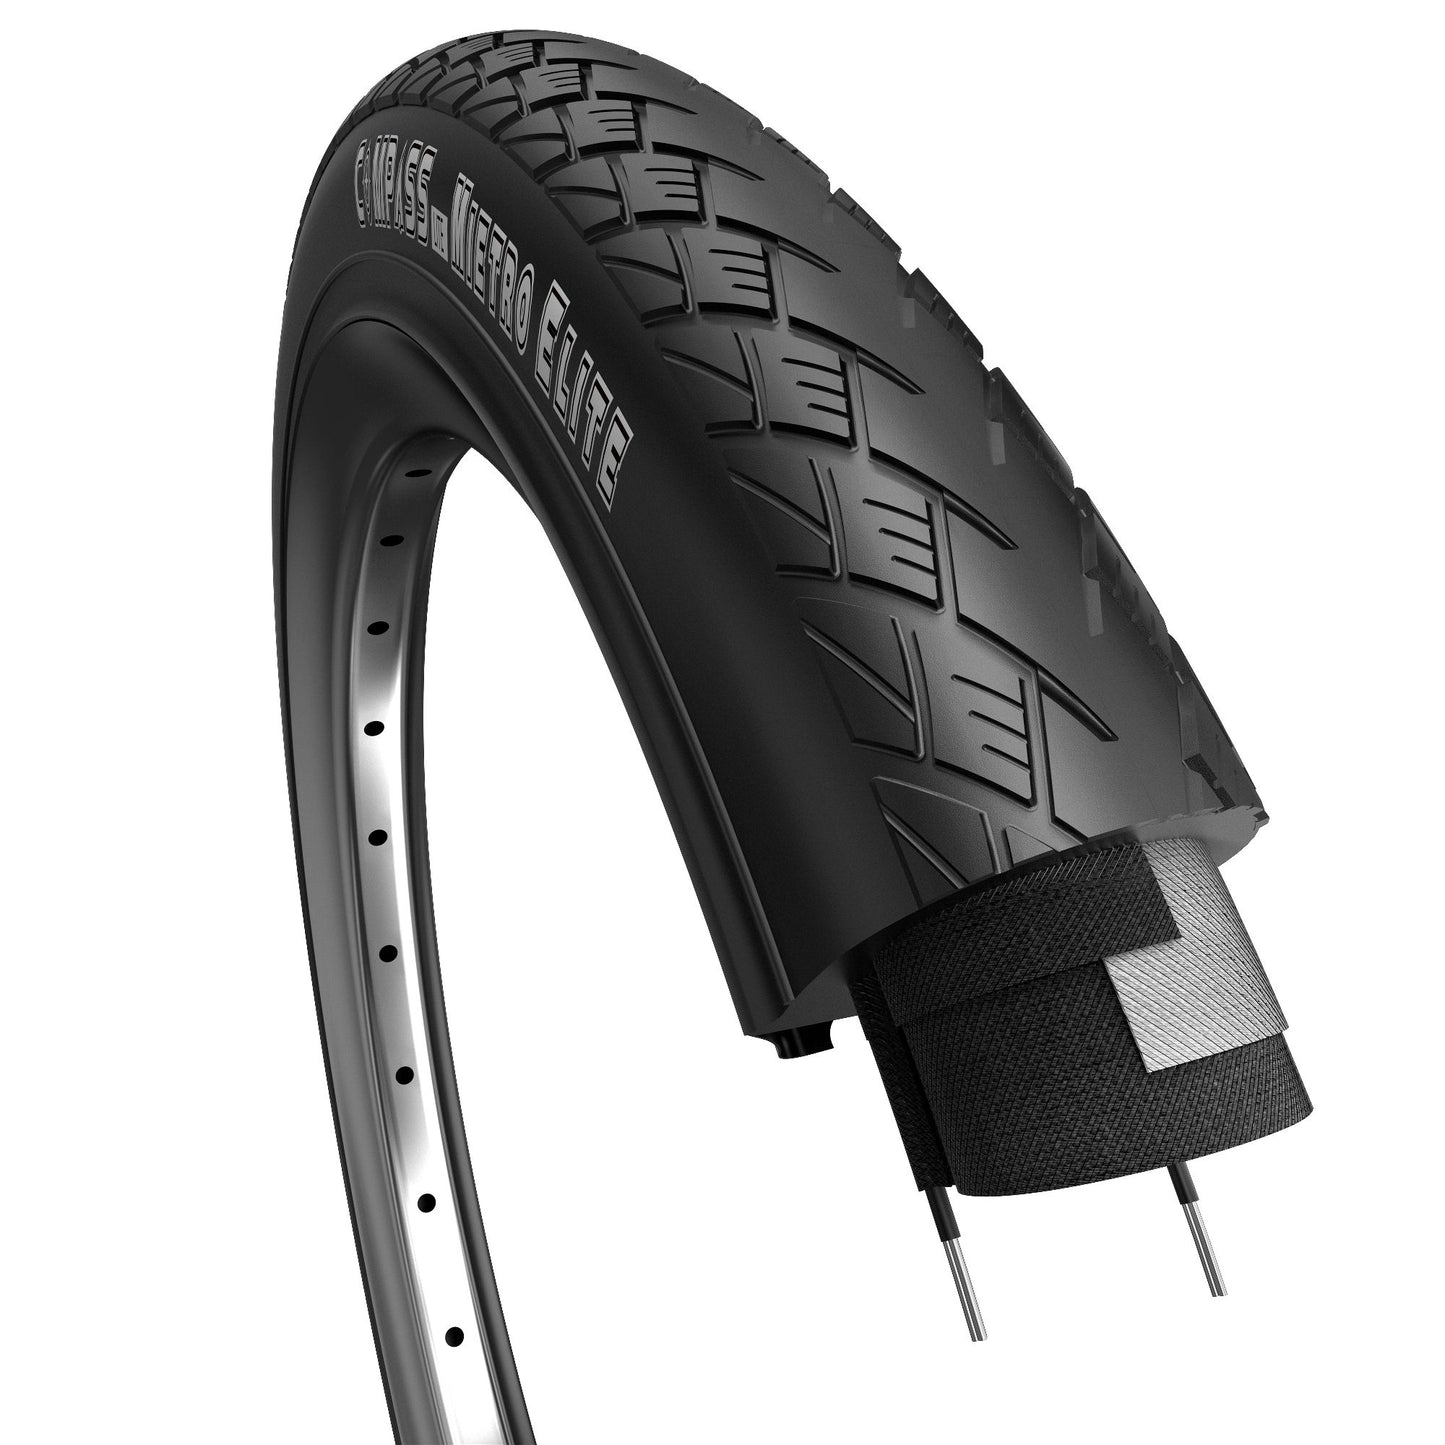 Metro de neumáticos de borde básico 28 x 1.50 40-622 mm negro con reflexión